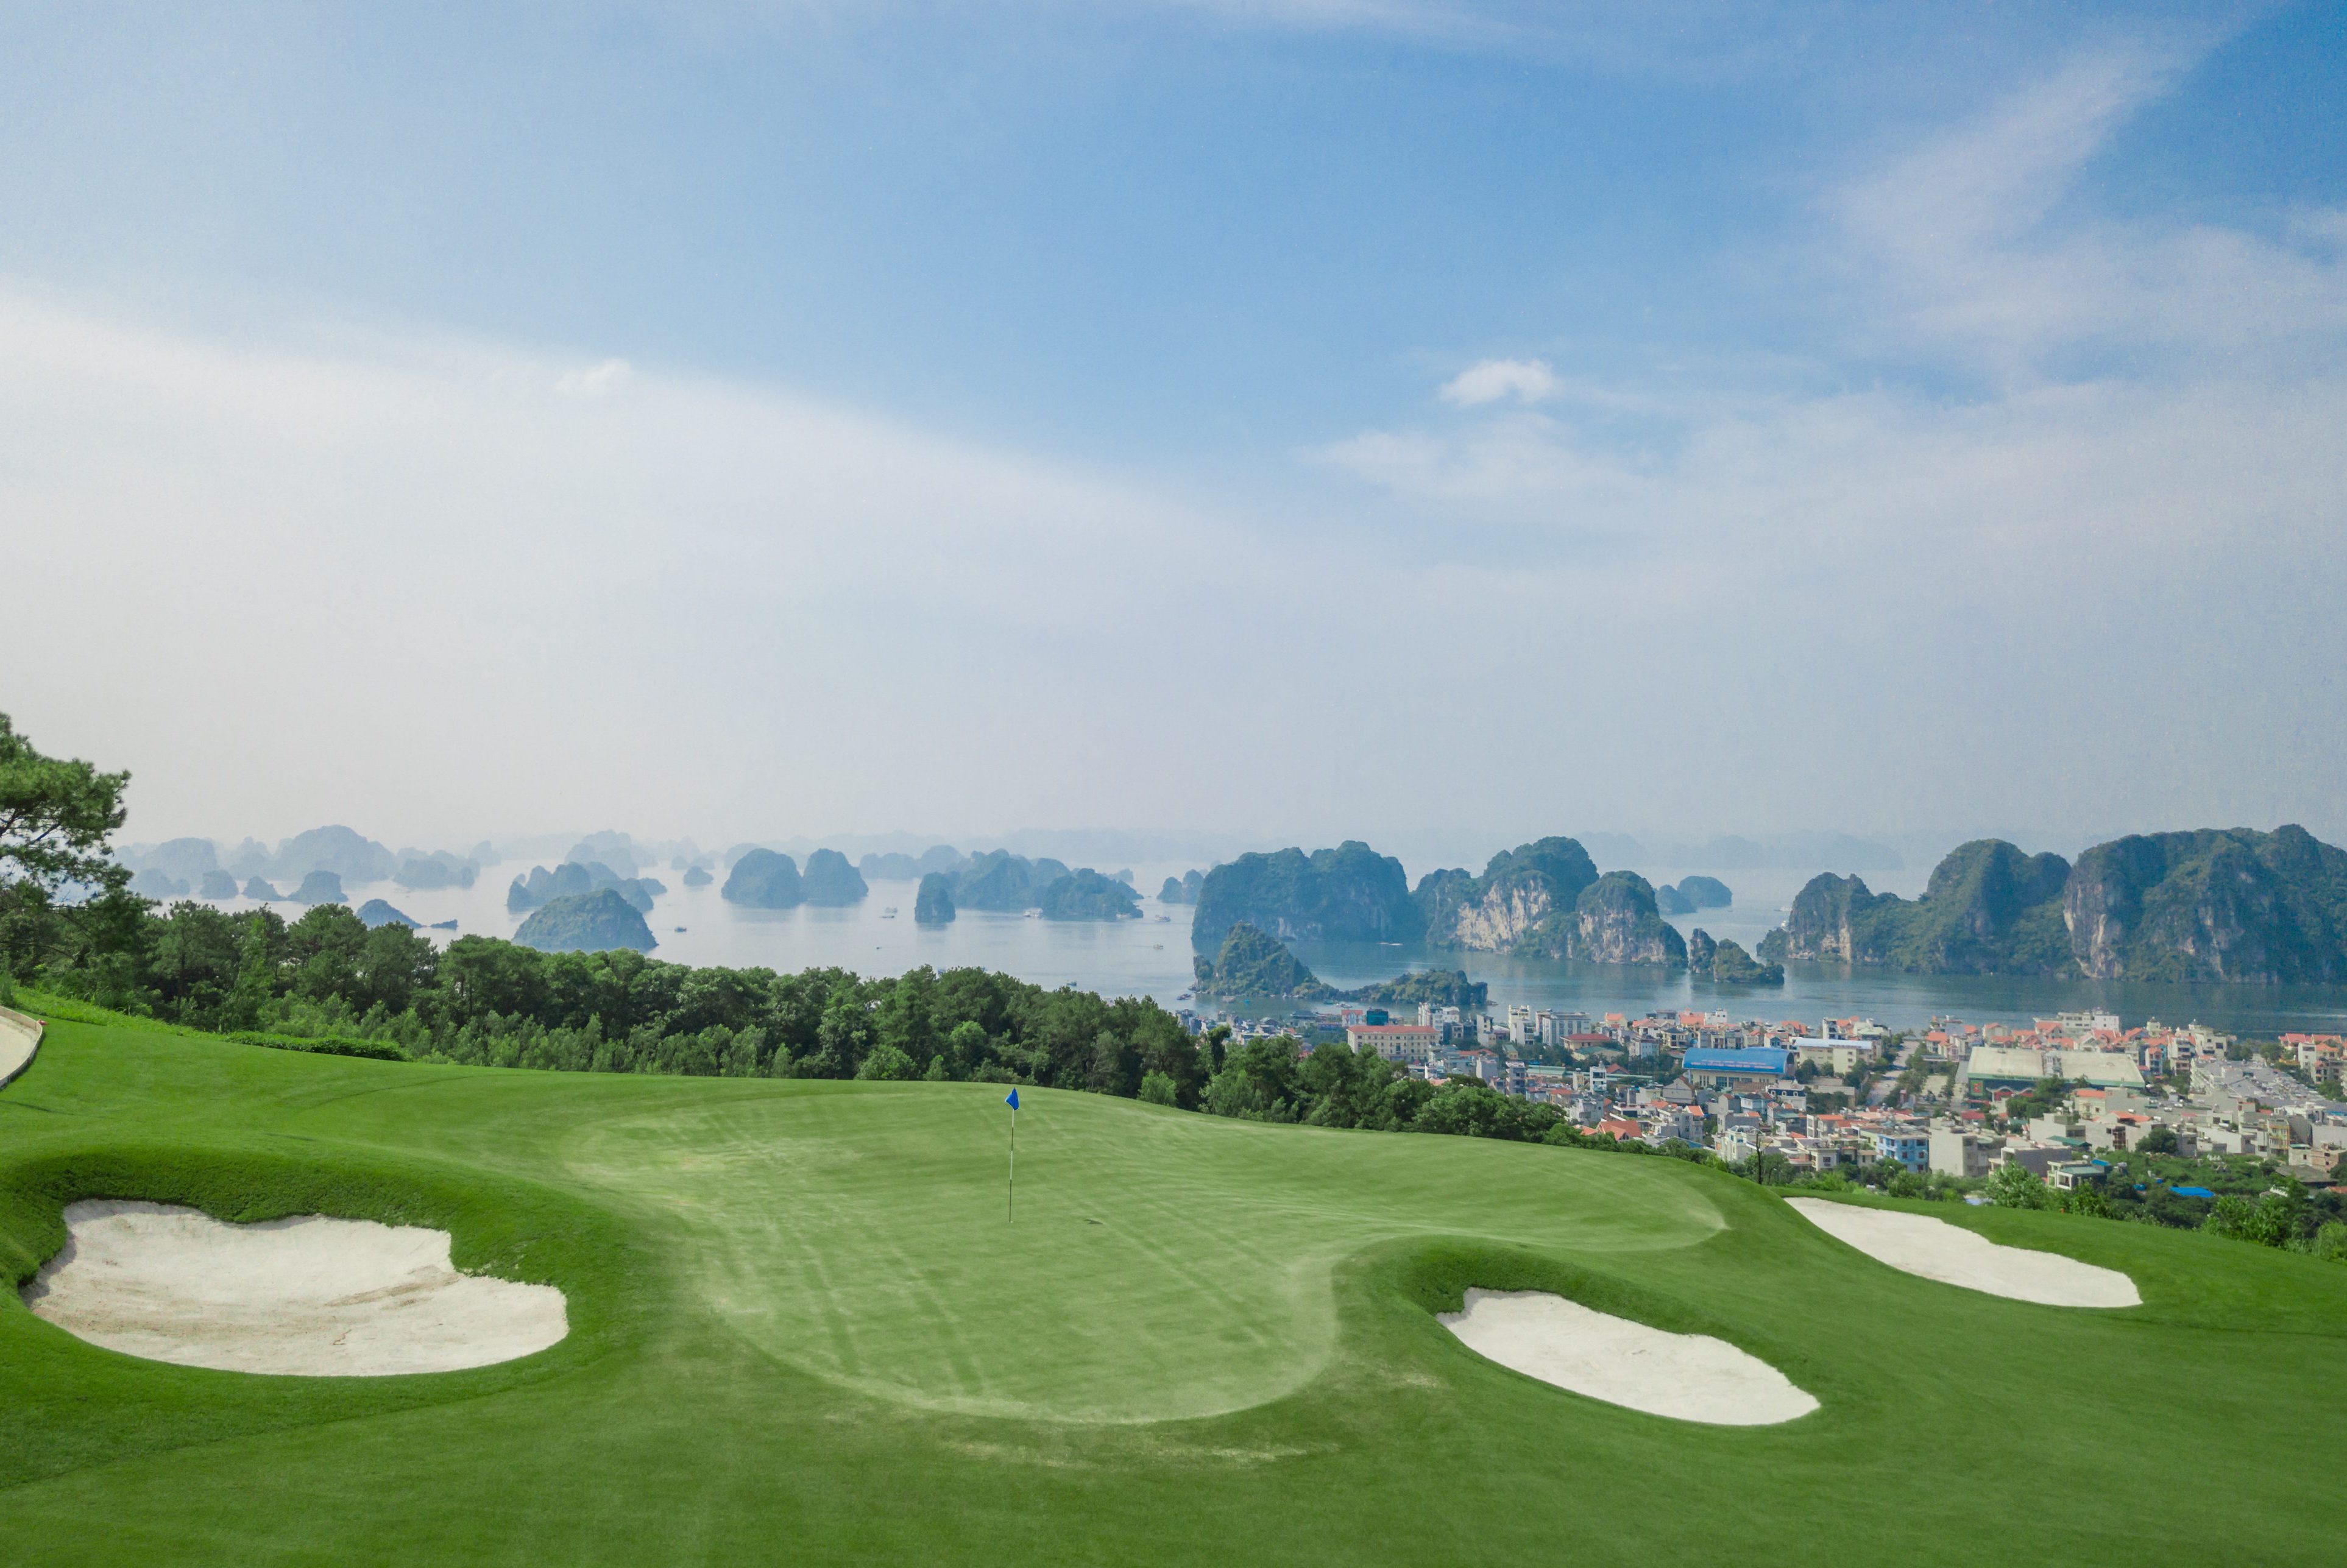 Dự án sân golf Ngôi sao Hạ Long tại đồi Cột 3 đến đồi Cột 8, TP. Hạ Long, tỉnh Quảng Ninh.